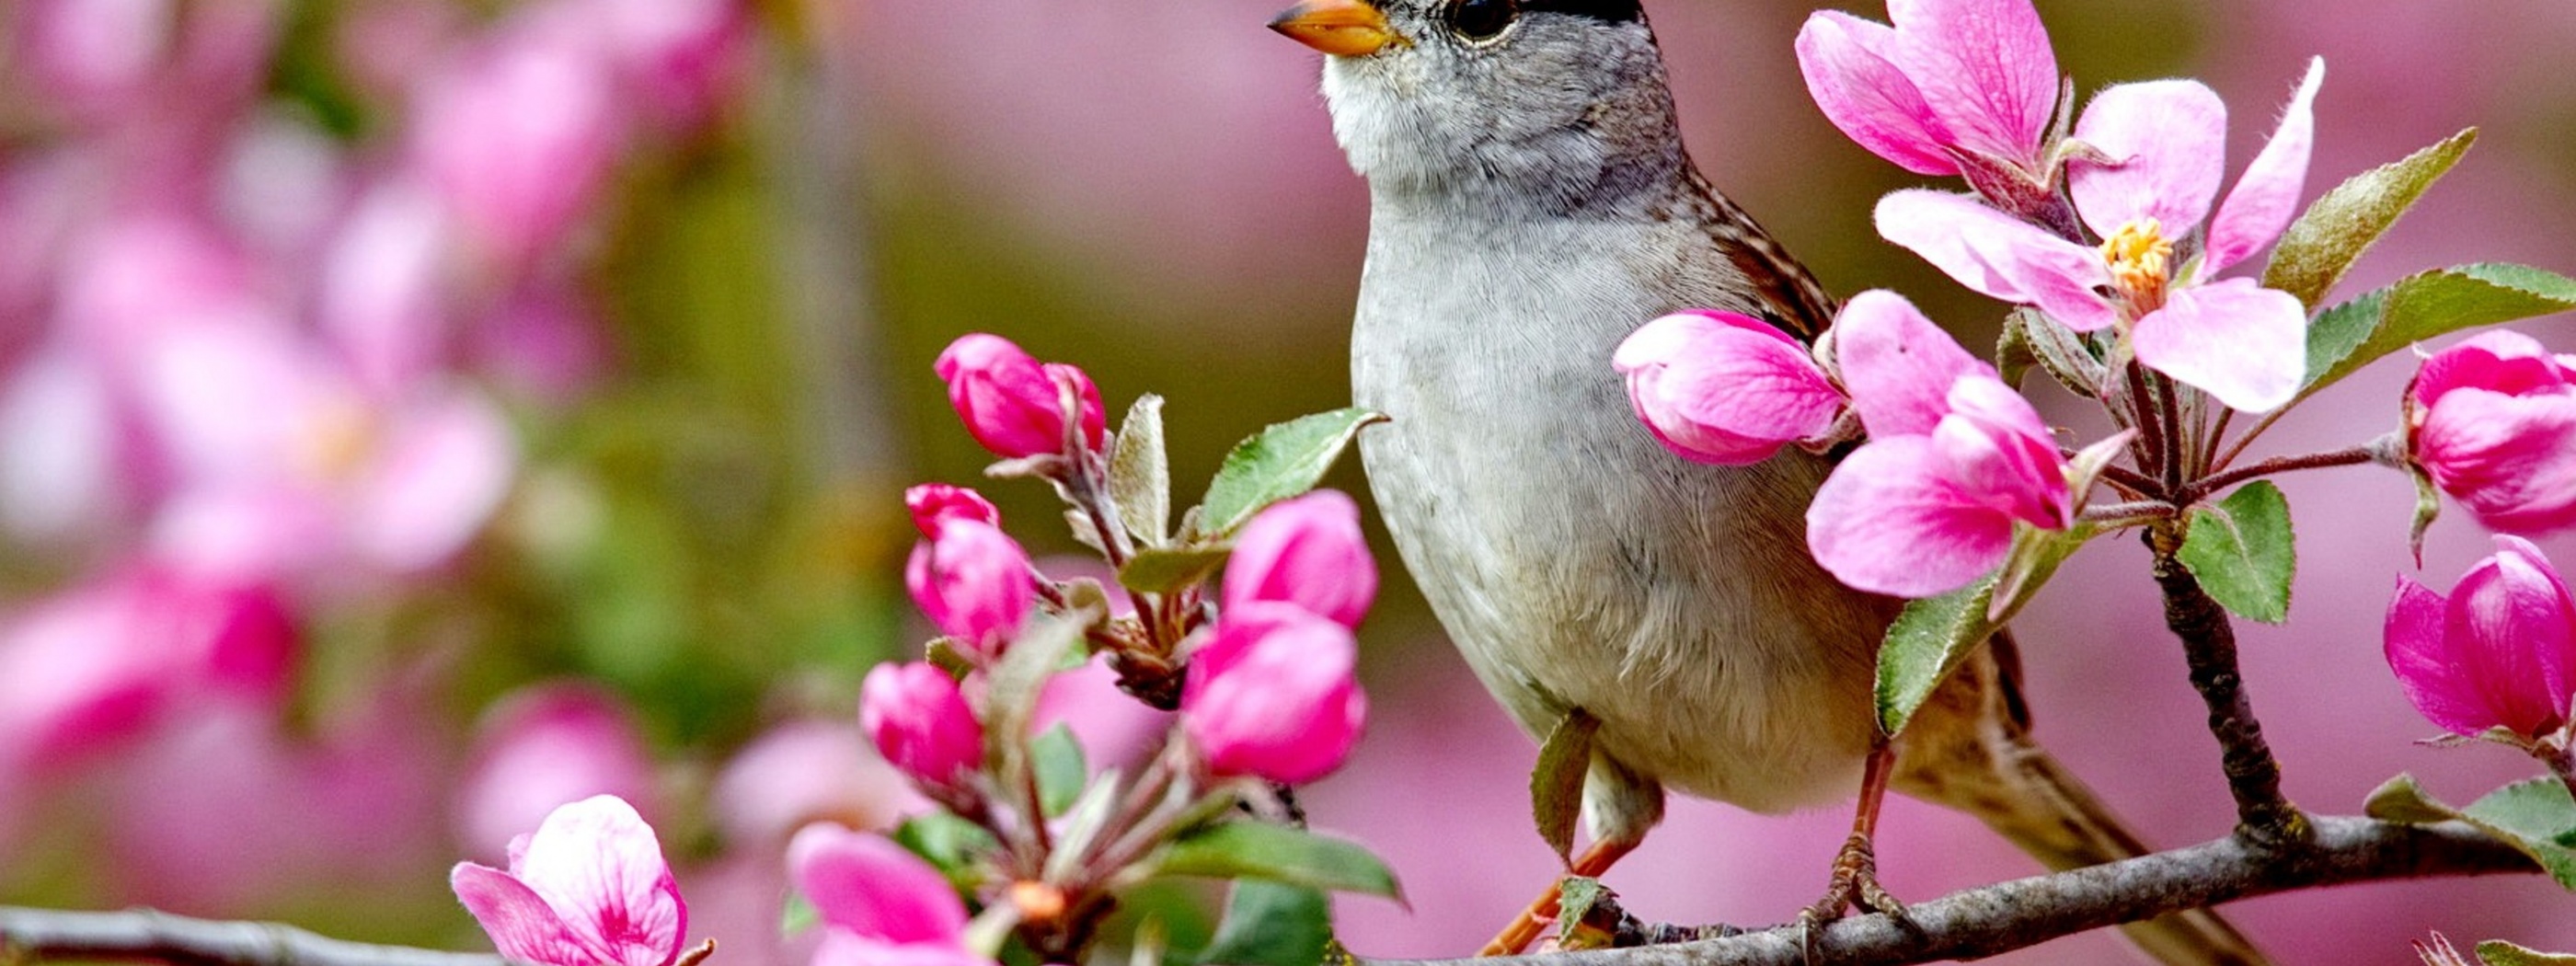 В душе пели птицы. Если в твоей душе осталась хоть одна Цветущая ветвь. Даром только птички поют. Если у тебя осталась хоть одна Цветущая ветвь. Erster Frühlingstag картинки.